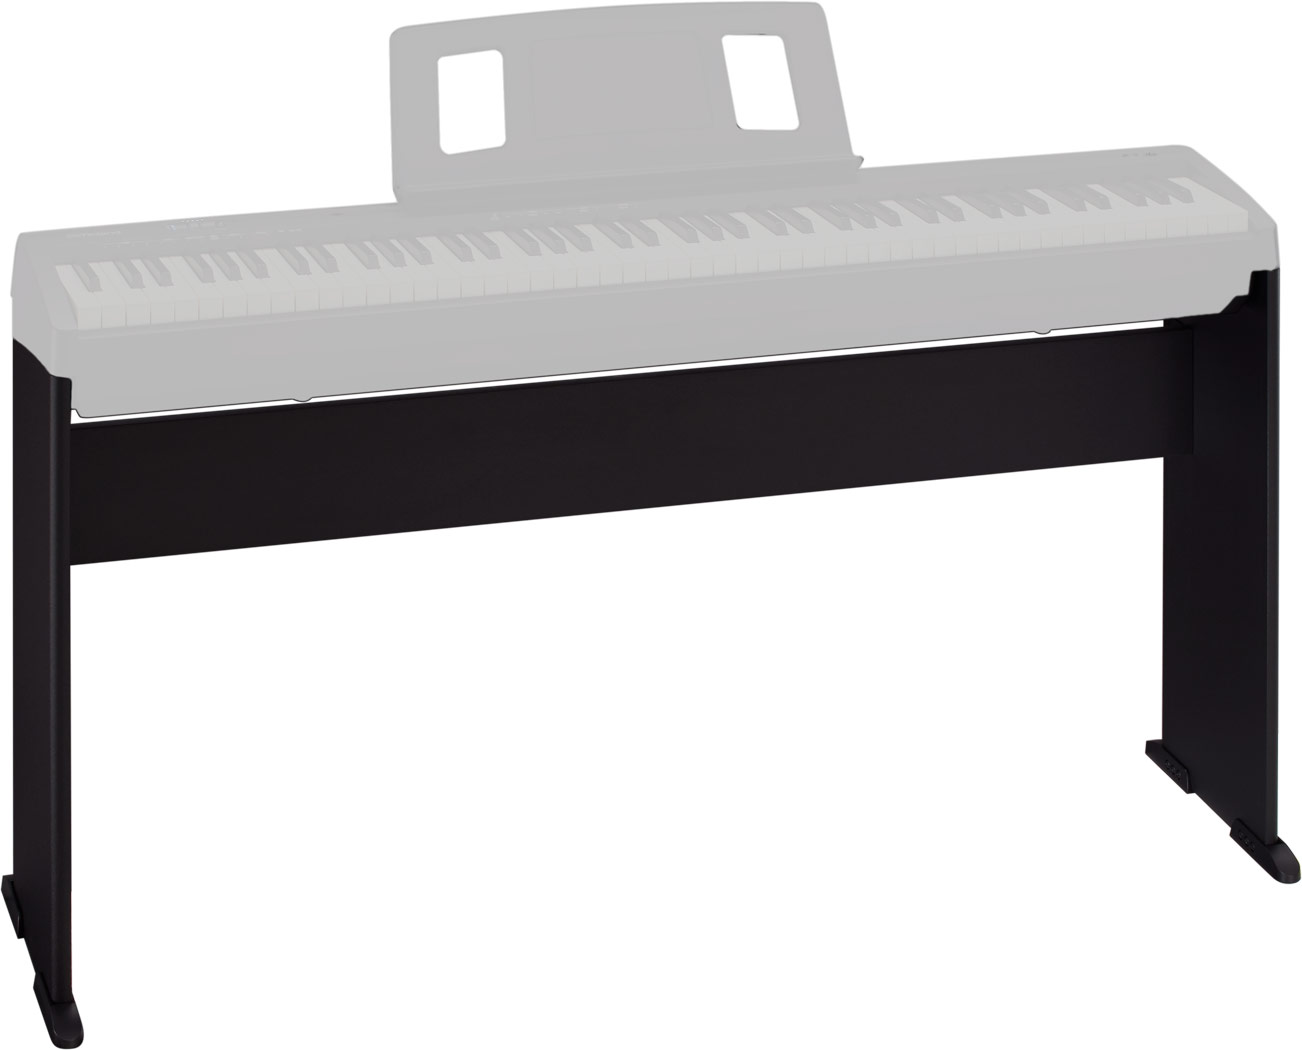 【あす楽対応】Roland ローランド キーボードスタンド 電子ピアノスタンド KeyboardStand FP-10専用 KSCFP10